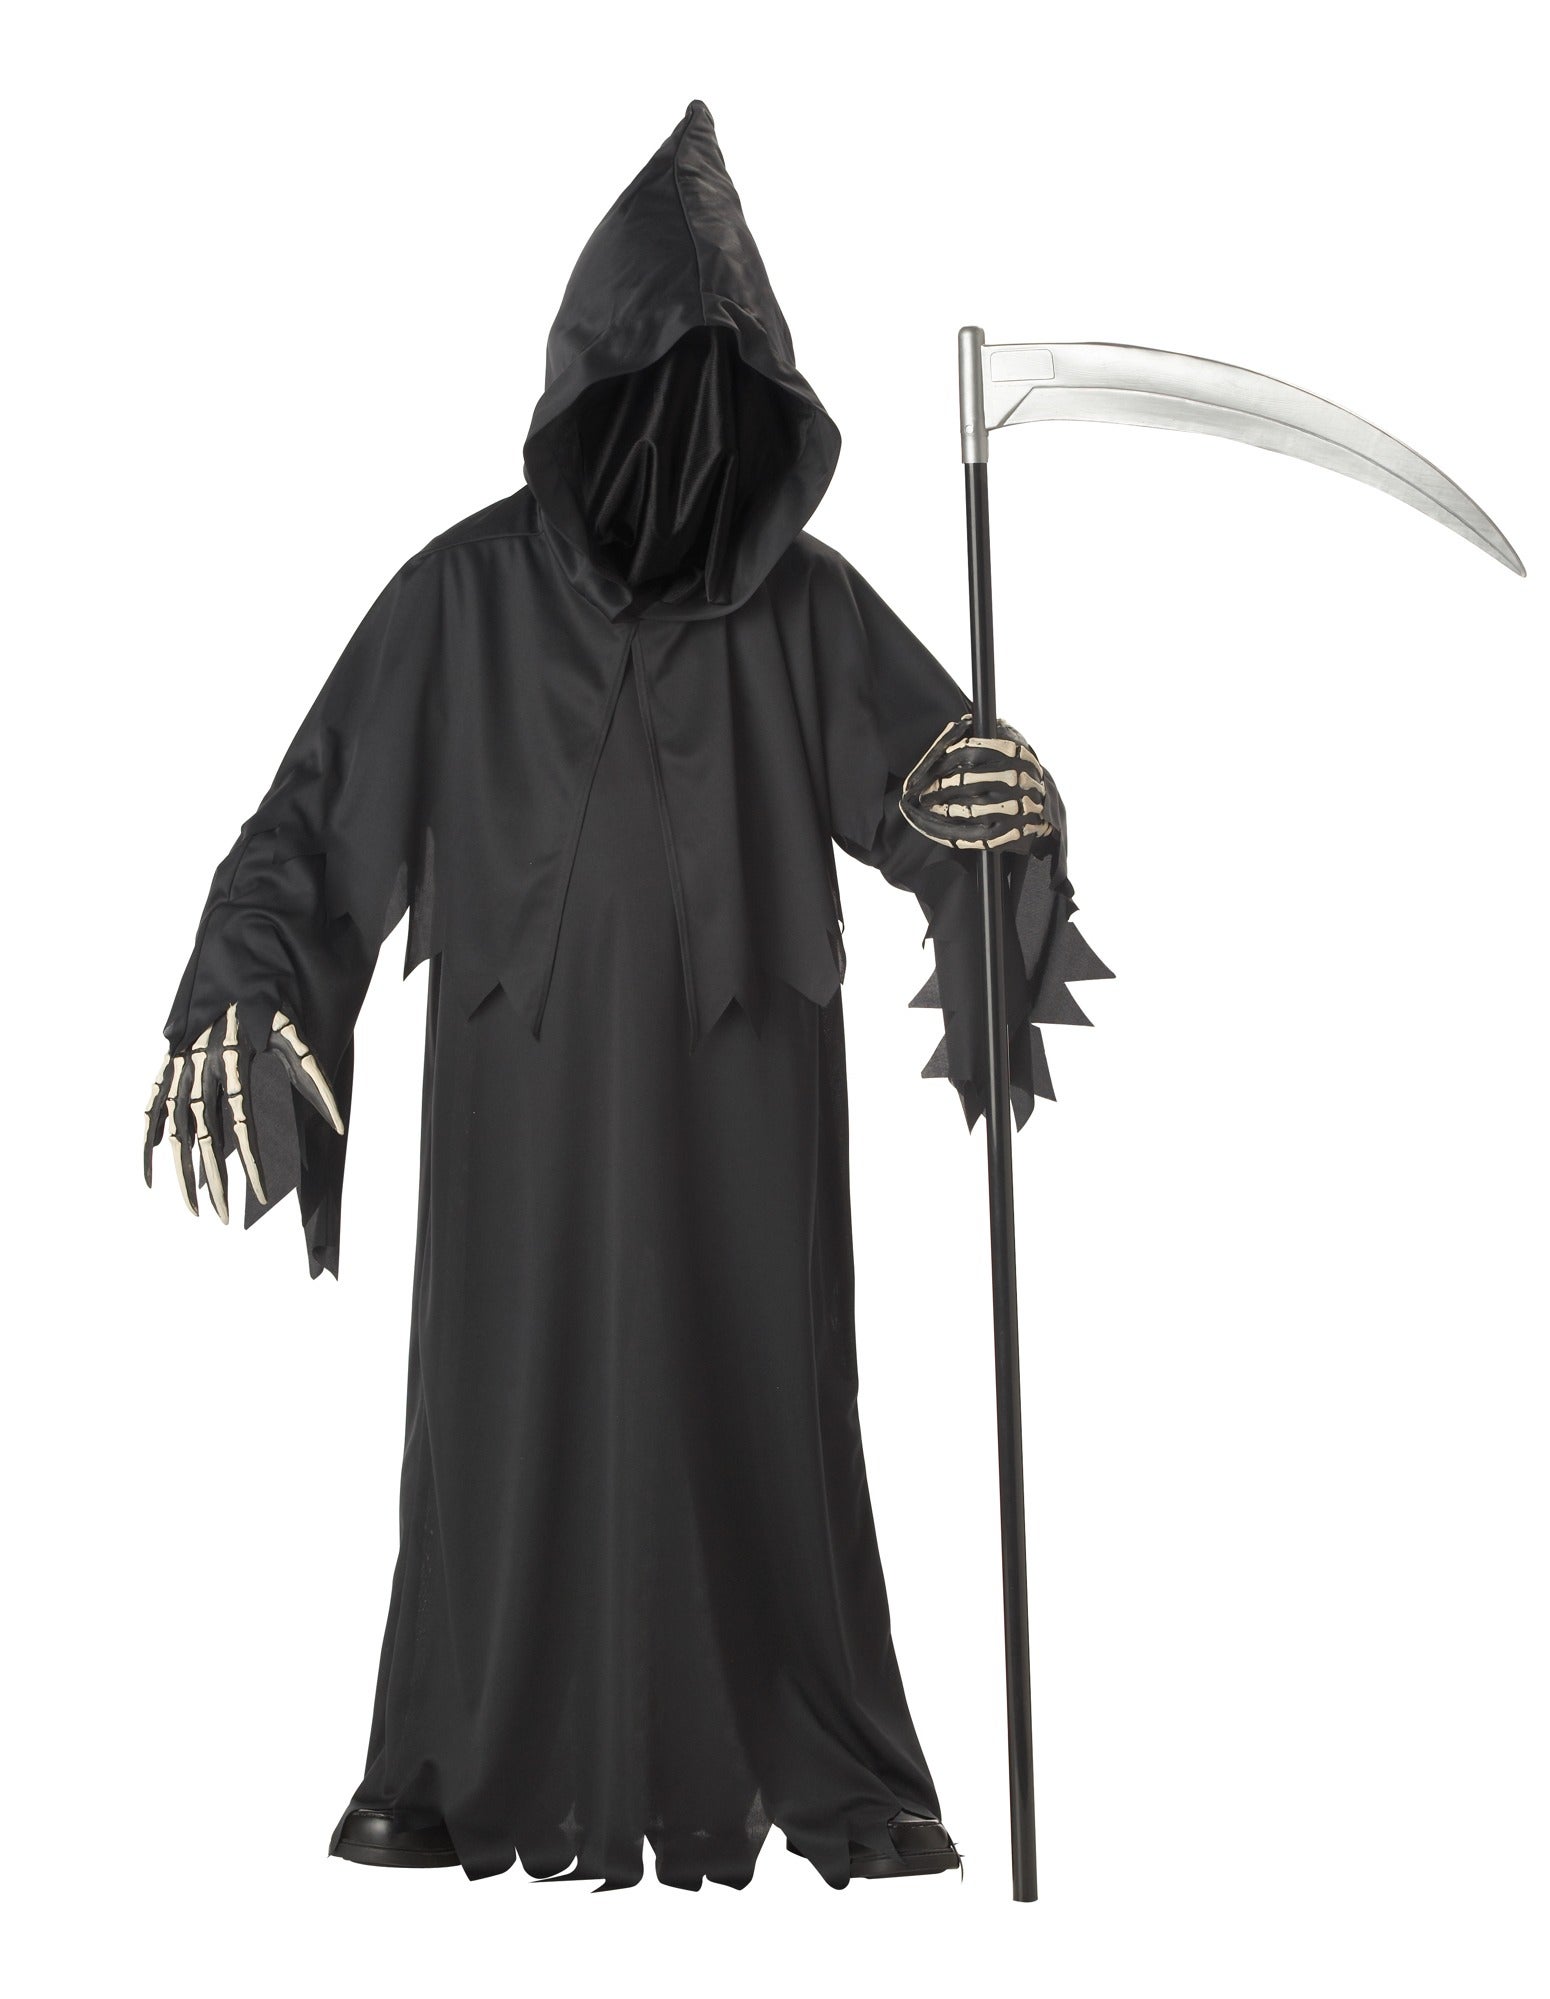 Hobbypos Grim Reaper Horror Faceless Master Deluxe Halloween Boys Costume